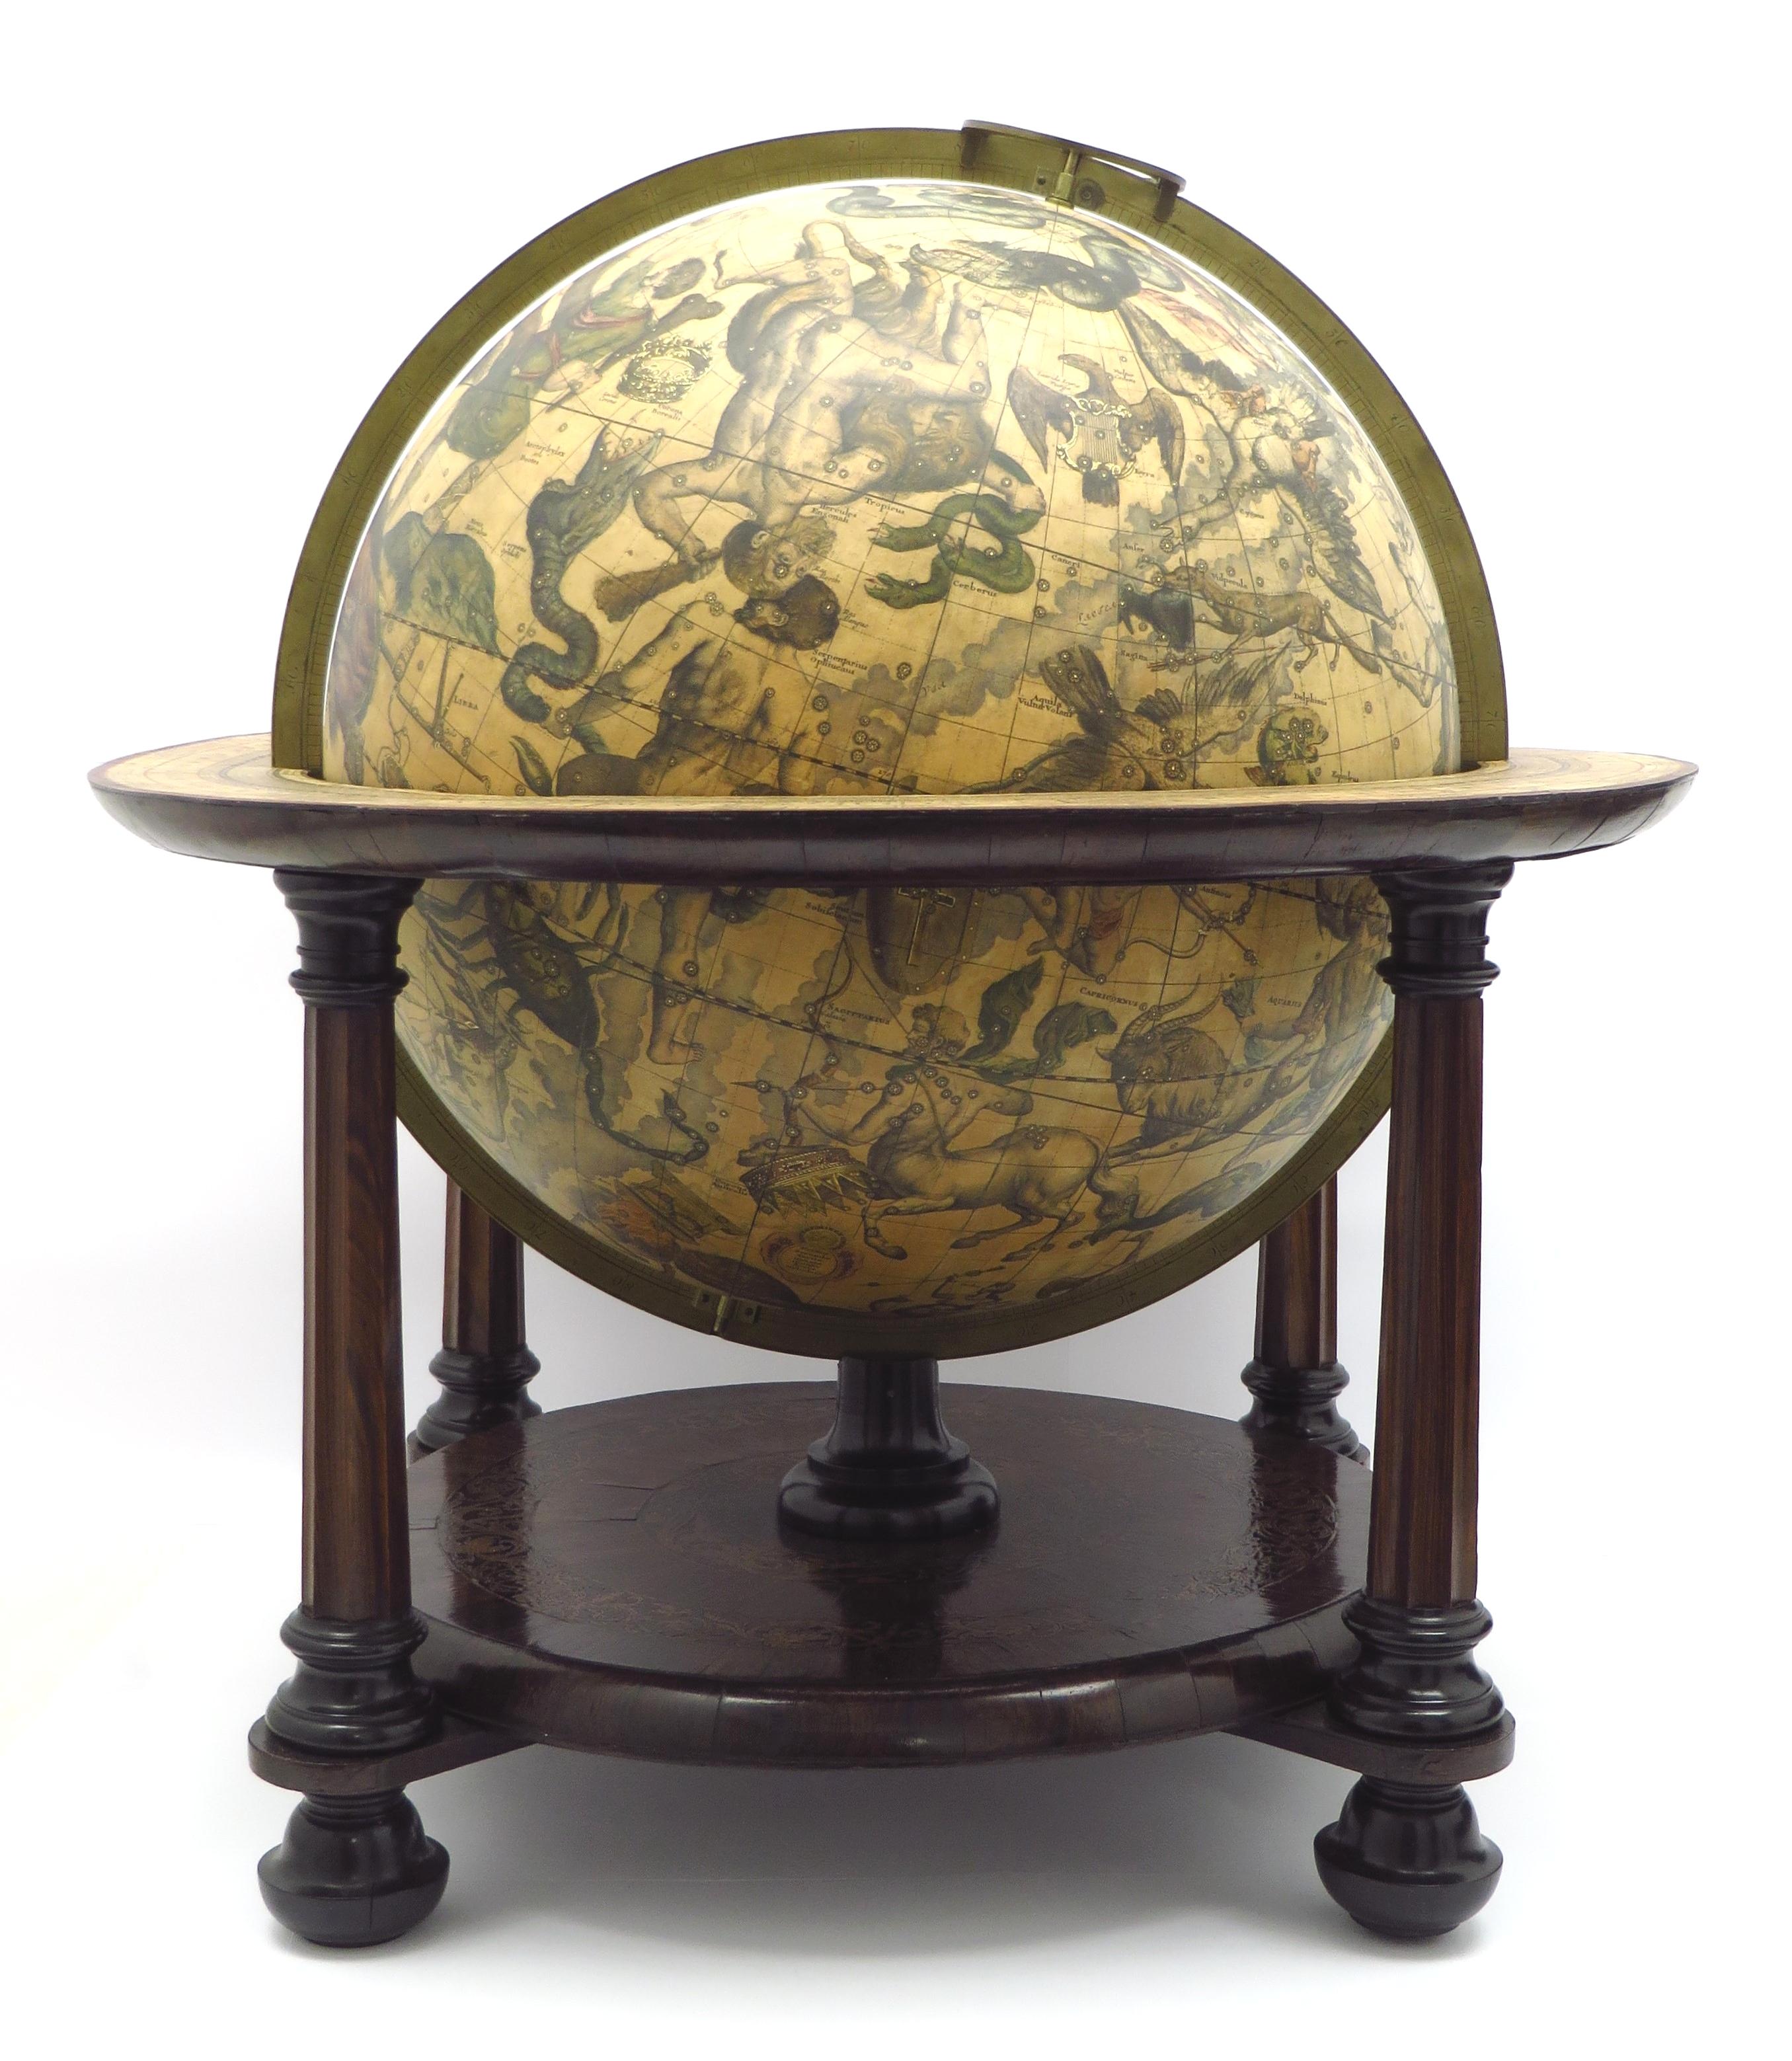 Ein prächtiger und sehr seltener Himmelsglobus aus dem frühen 18. Jahrhundert, hergestellt von Gerard und Leonard Valk. Das Ende des vorigen Jahrhunderts von Gerard Valk gegründete Unternehmen, das von seinem Sohn Leonard unterstützt wurde, war im